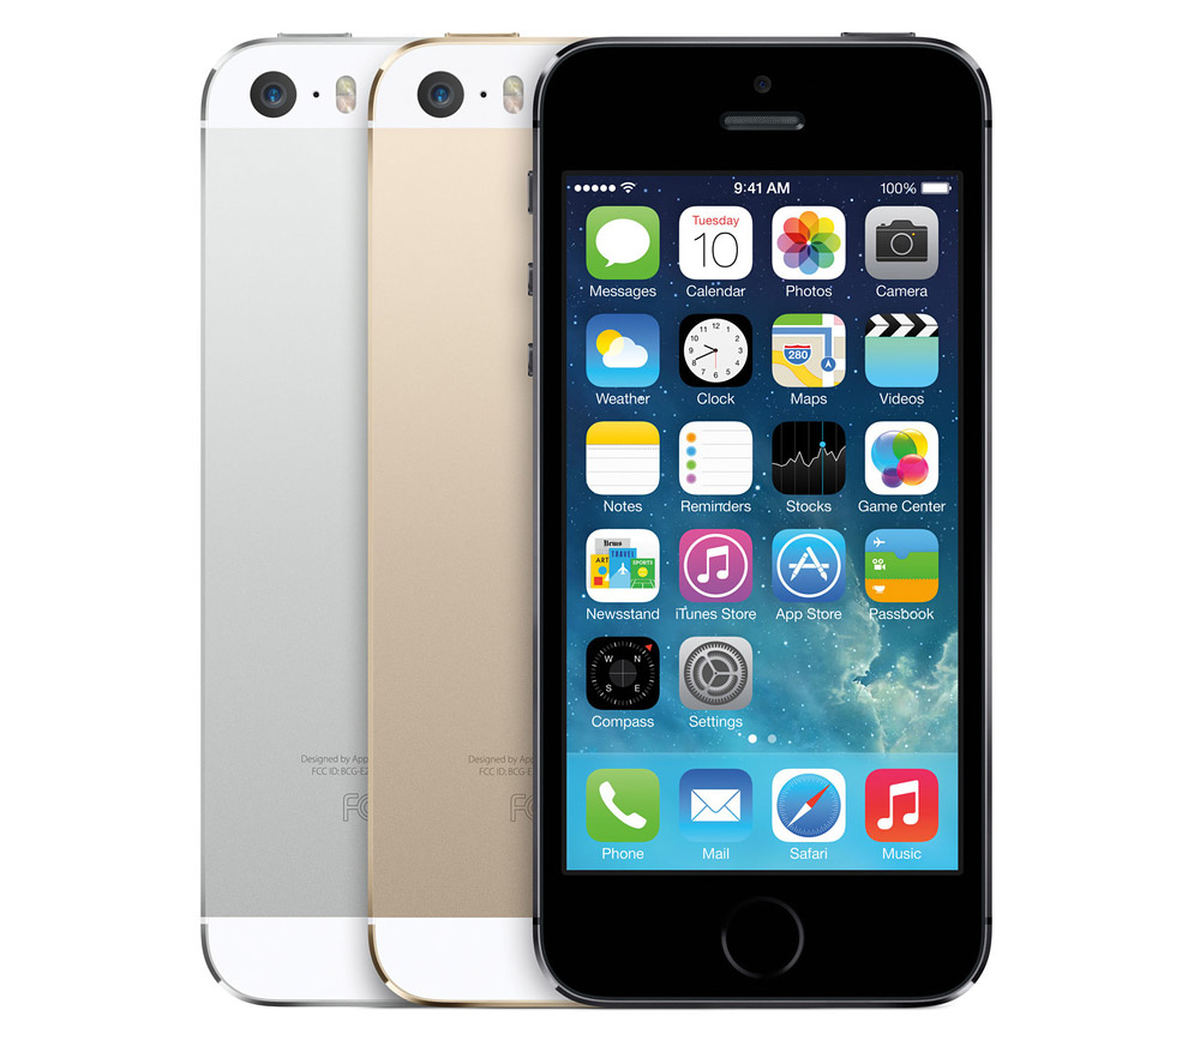 Apple iPhone 5s : Caratteristiche e Opinioni | JuzaPhoto